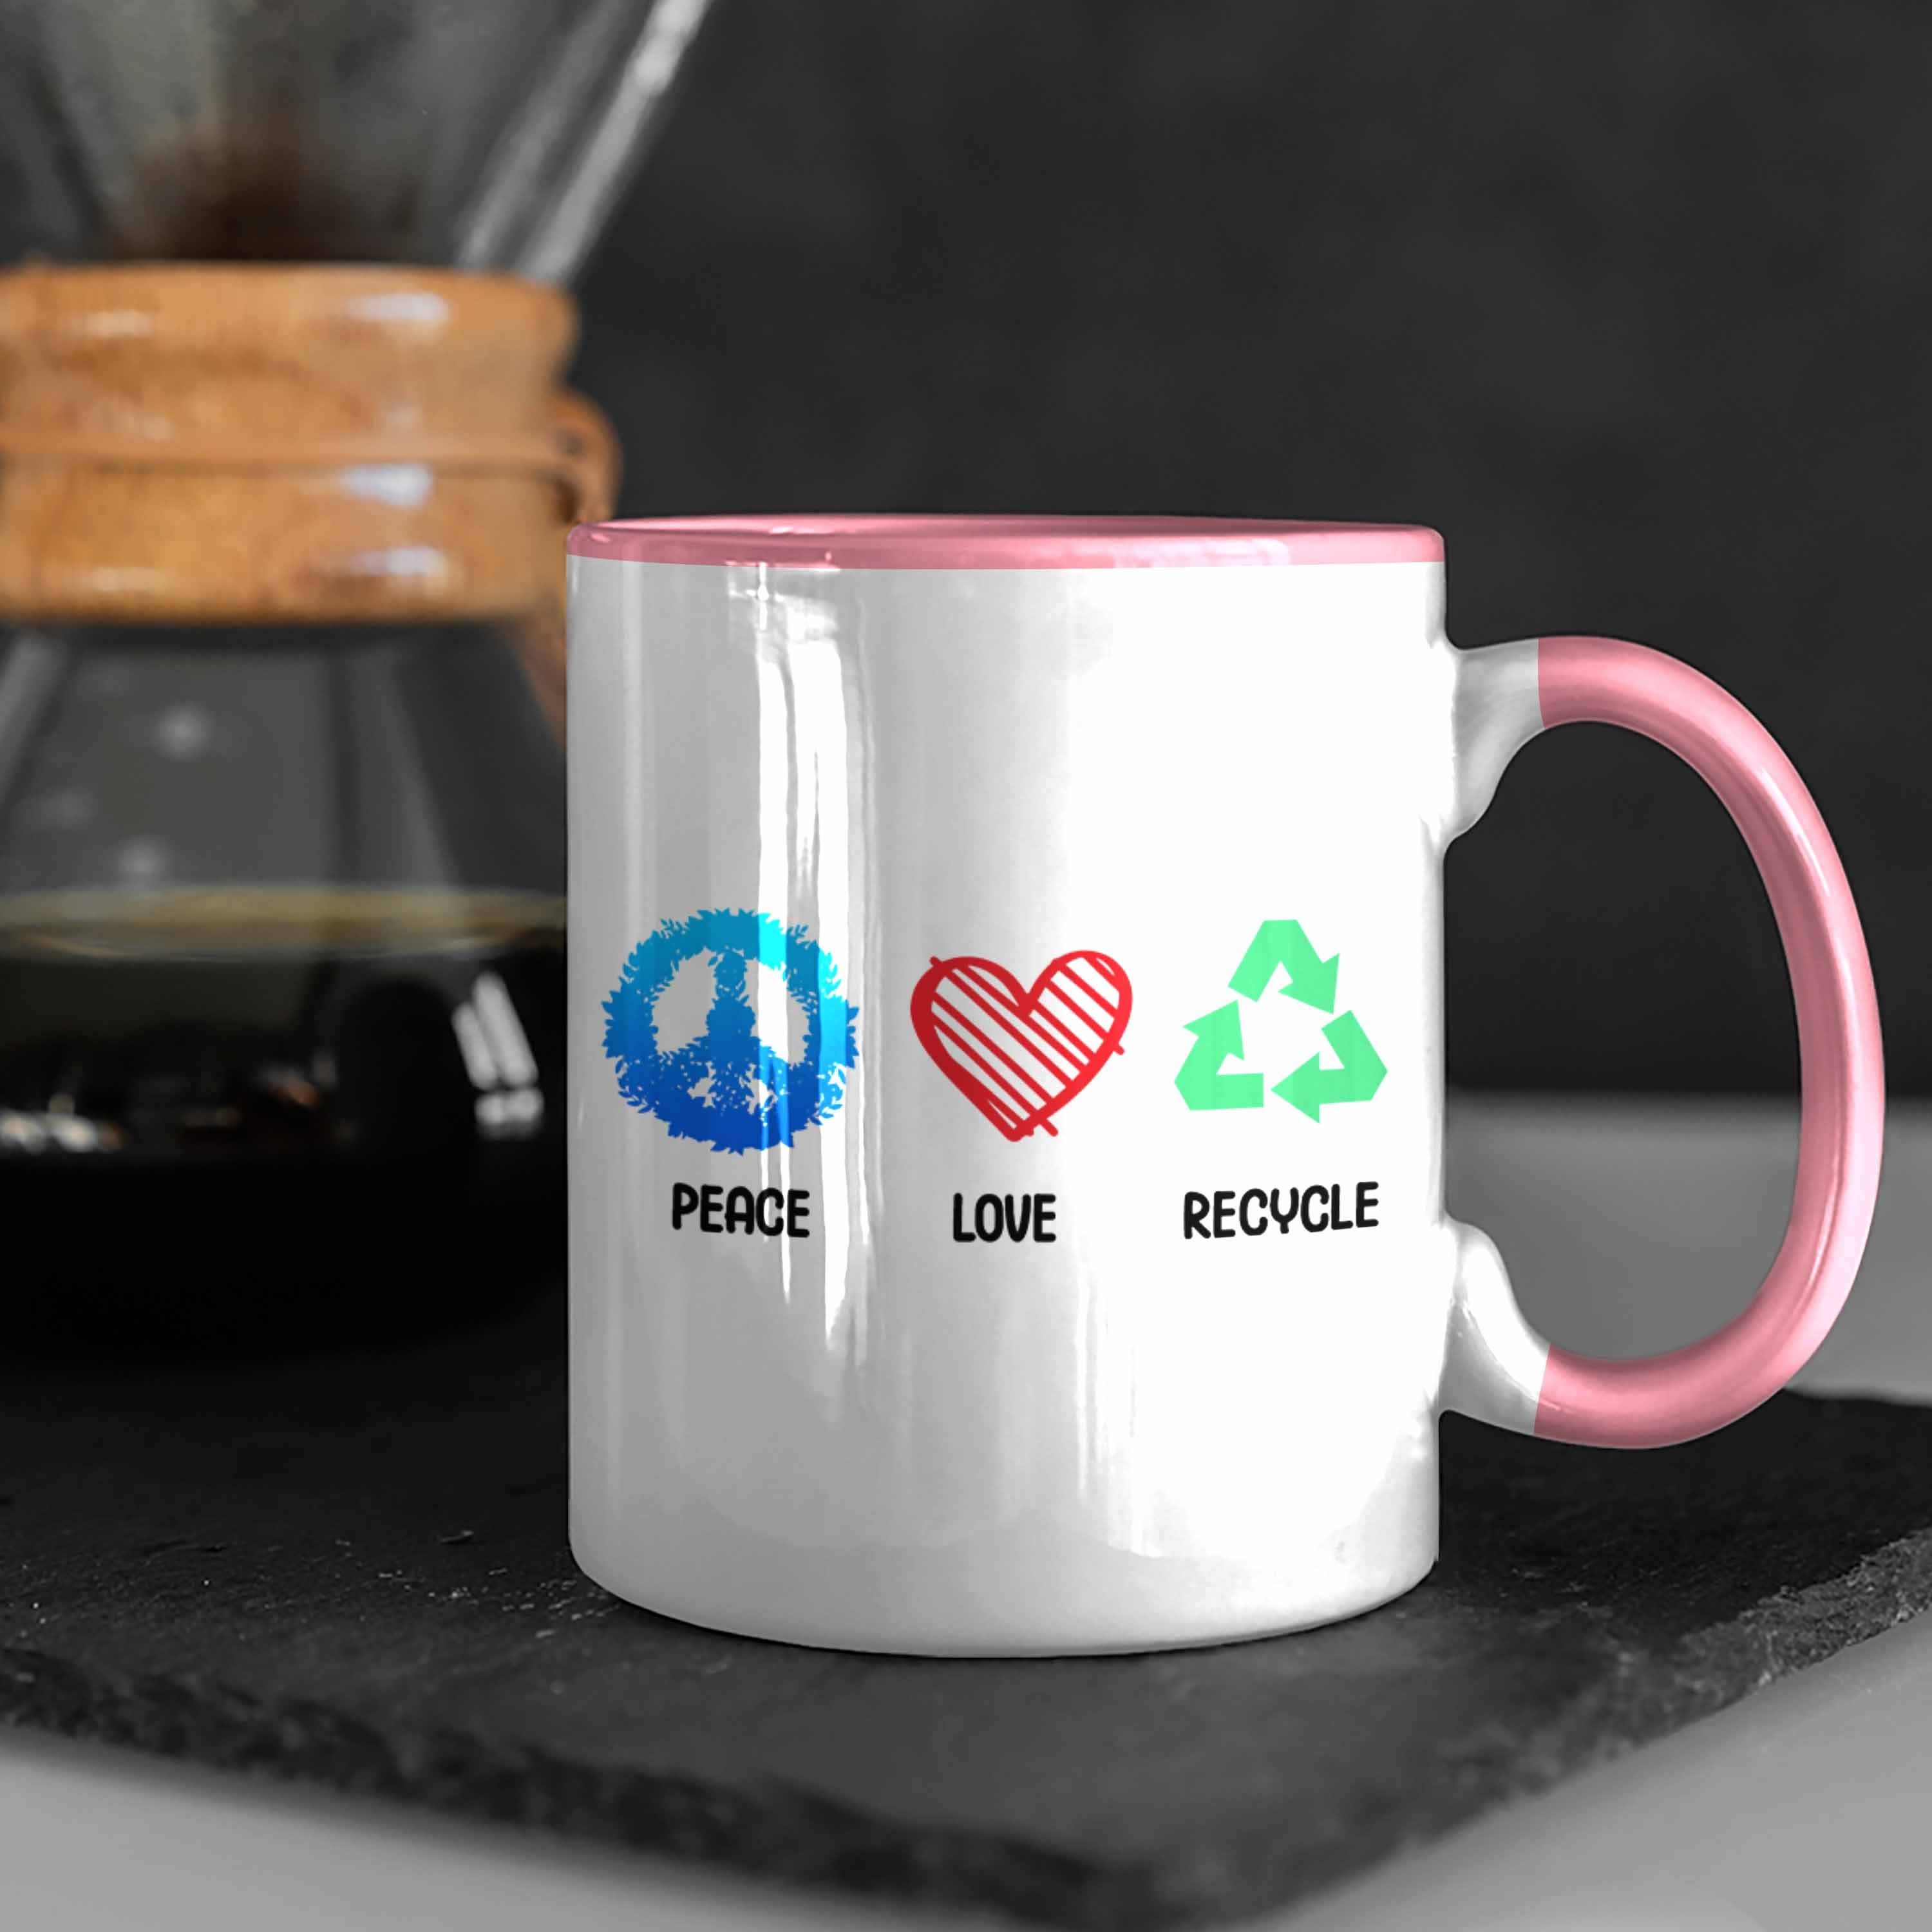 Trendation Tasse Welt Geschenk Retten Generation Aktivisten Umwelt Tasse Recyceln Rosa